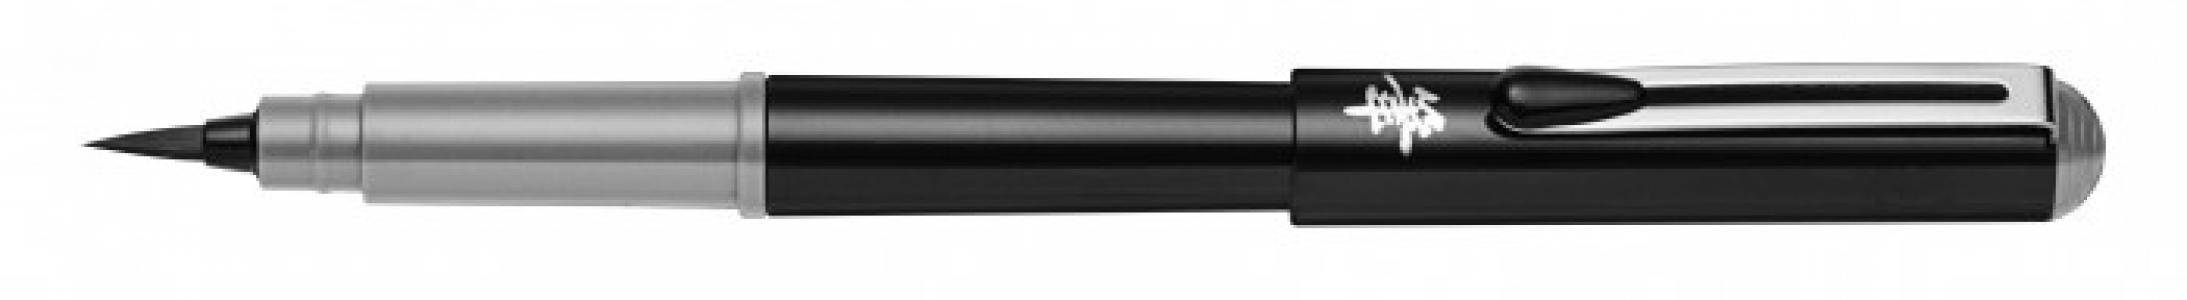 Ручка-кисть Brush Pen для каллиграфии со сменными картриджами GFKP3 Pentel